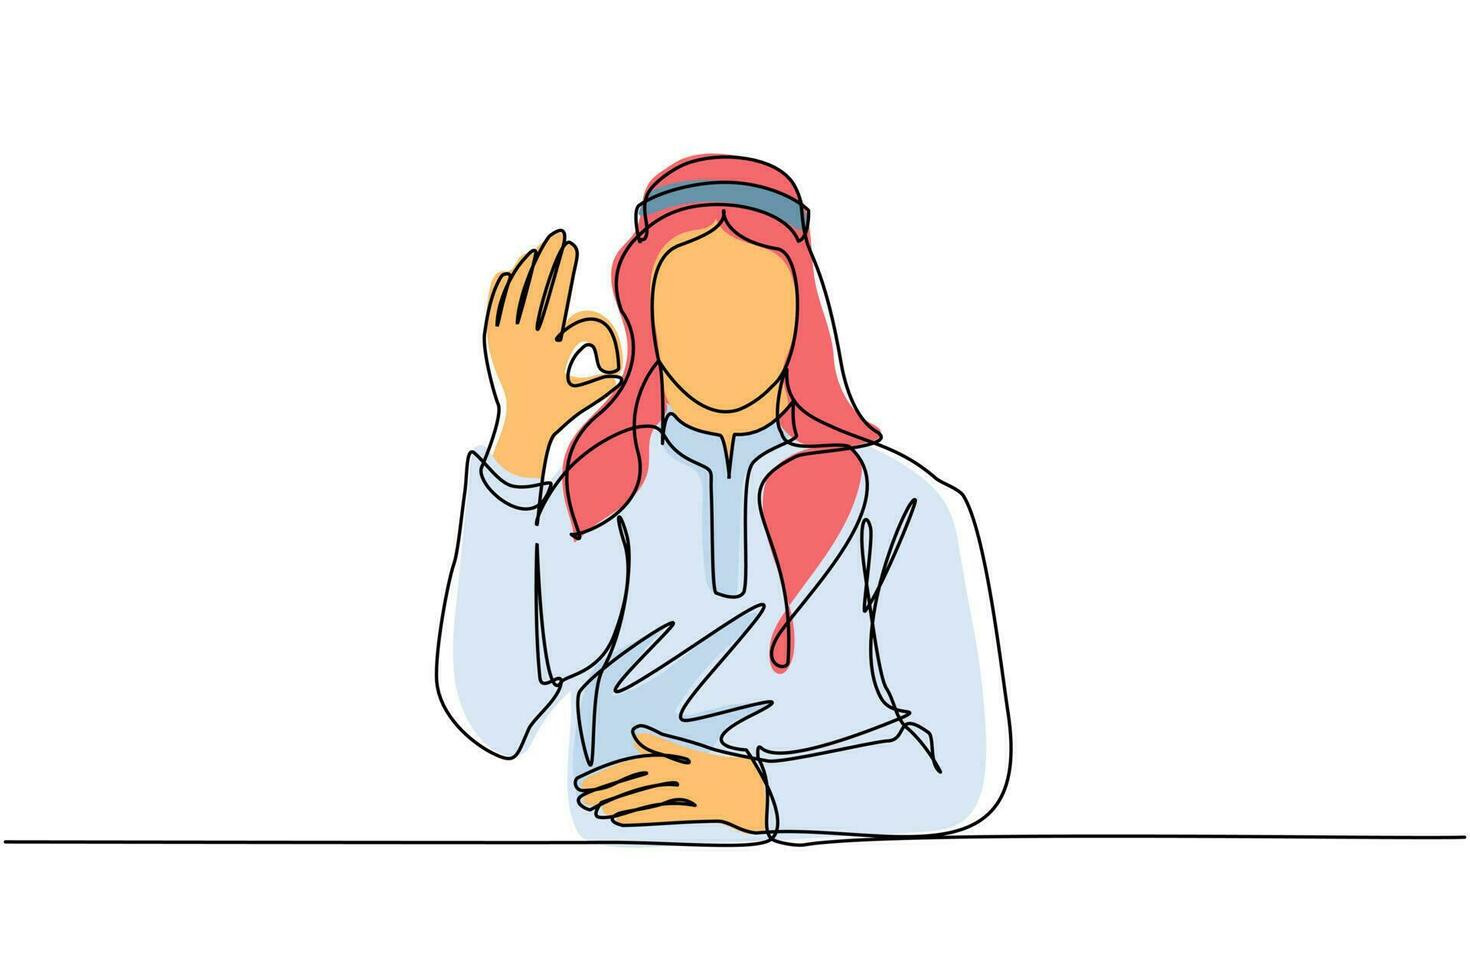 dibujo continuo de una línea hombre árabe con ropa tradicional haciendo gestos con el signo de ok. signo bien, concepto de lenguaje gestual. hombre sonriente de pie mostrando el signo ok con los dedos. vector de diseño de dibujo de una sola línea